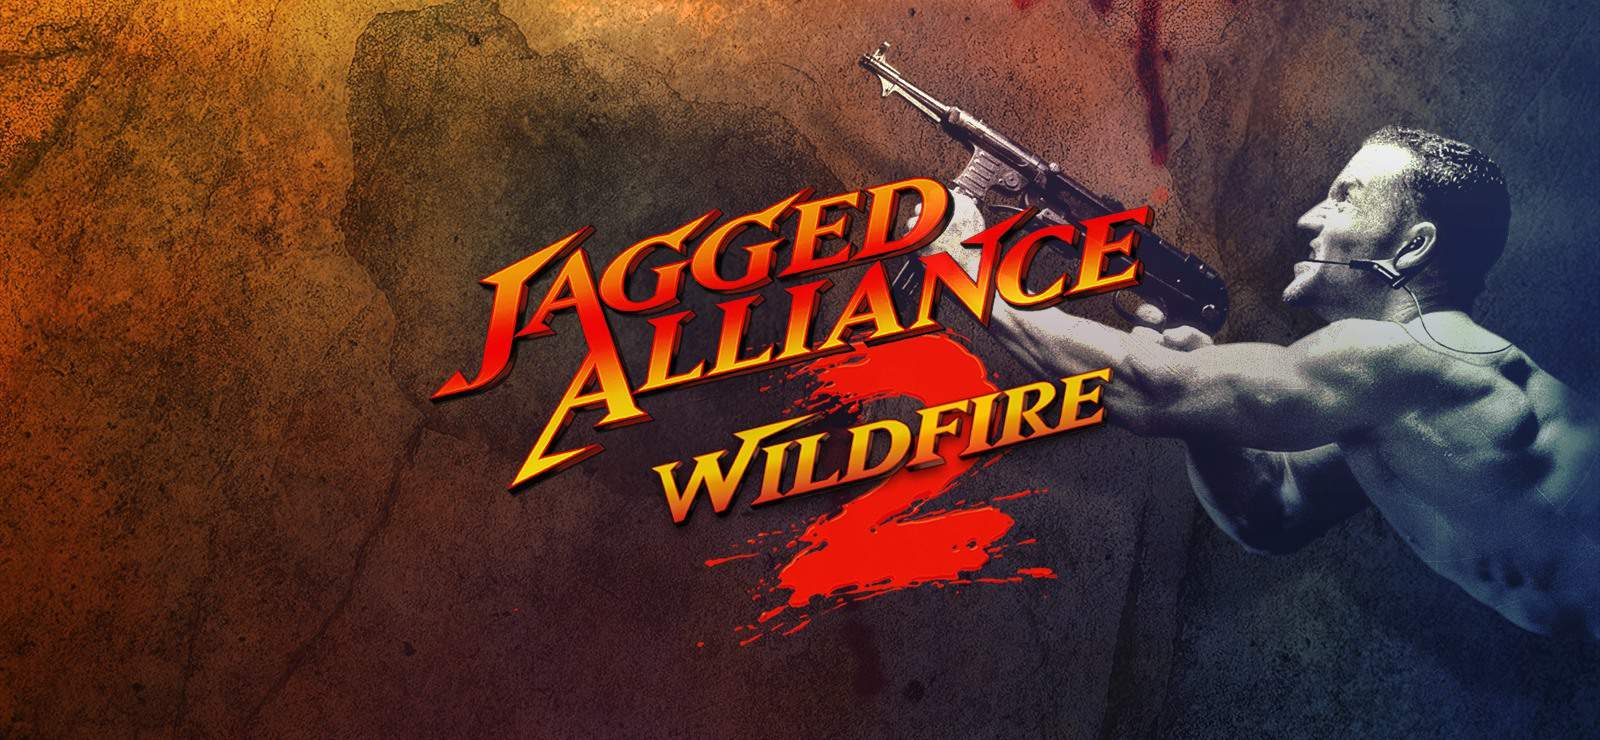 download steam jagged alliance 2 wildfire